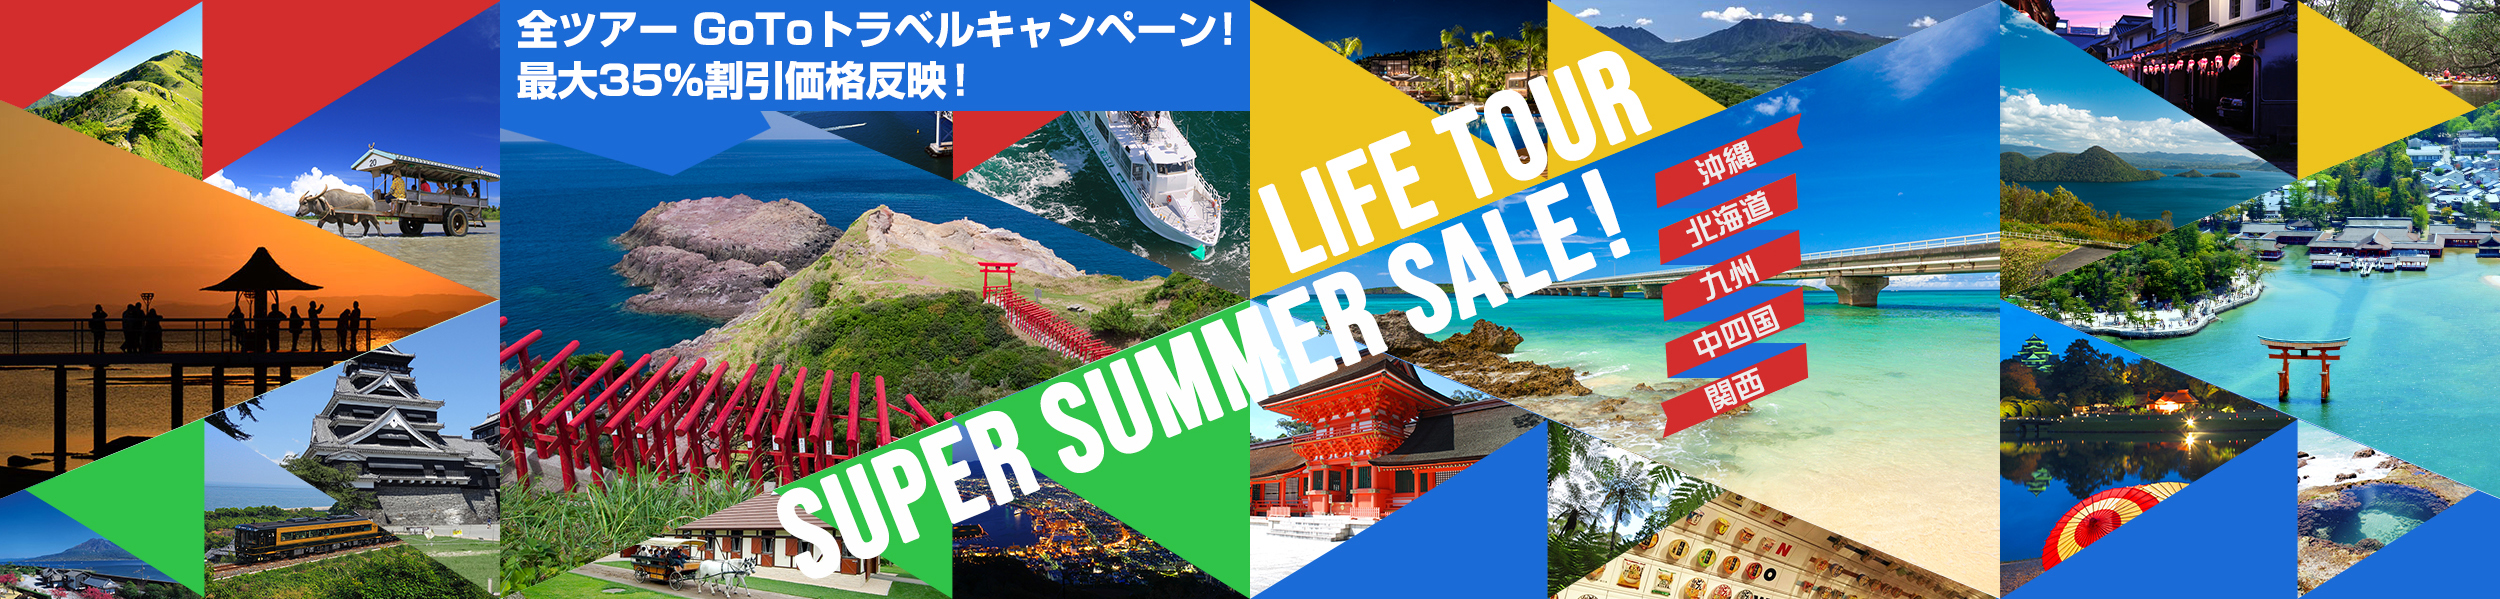 7月~9月出発期間の大特価 値下げツアーがラインナップ「沖縄」「北海道」「九州」「中四国」「関西」ライフツアースーパーサマーセール